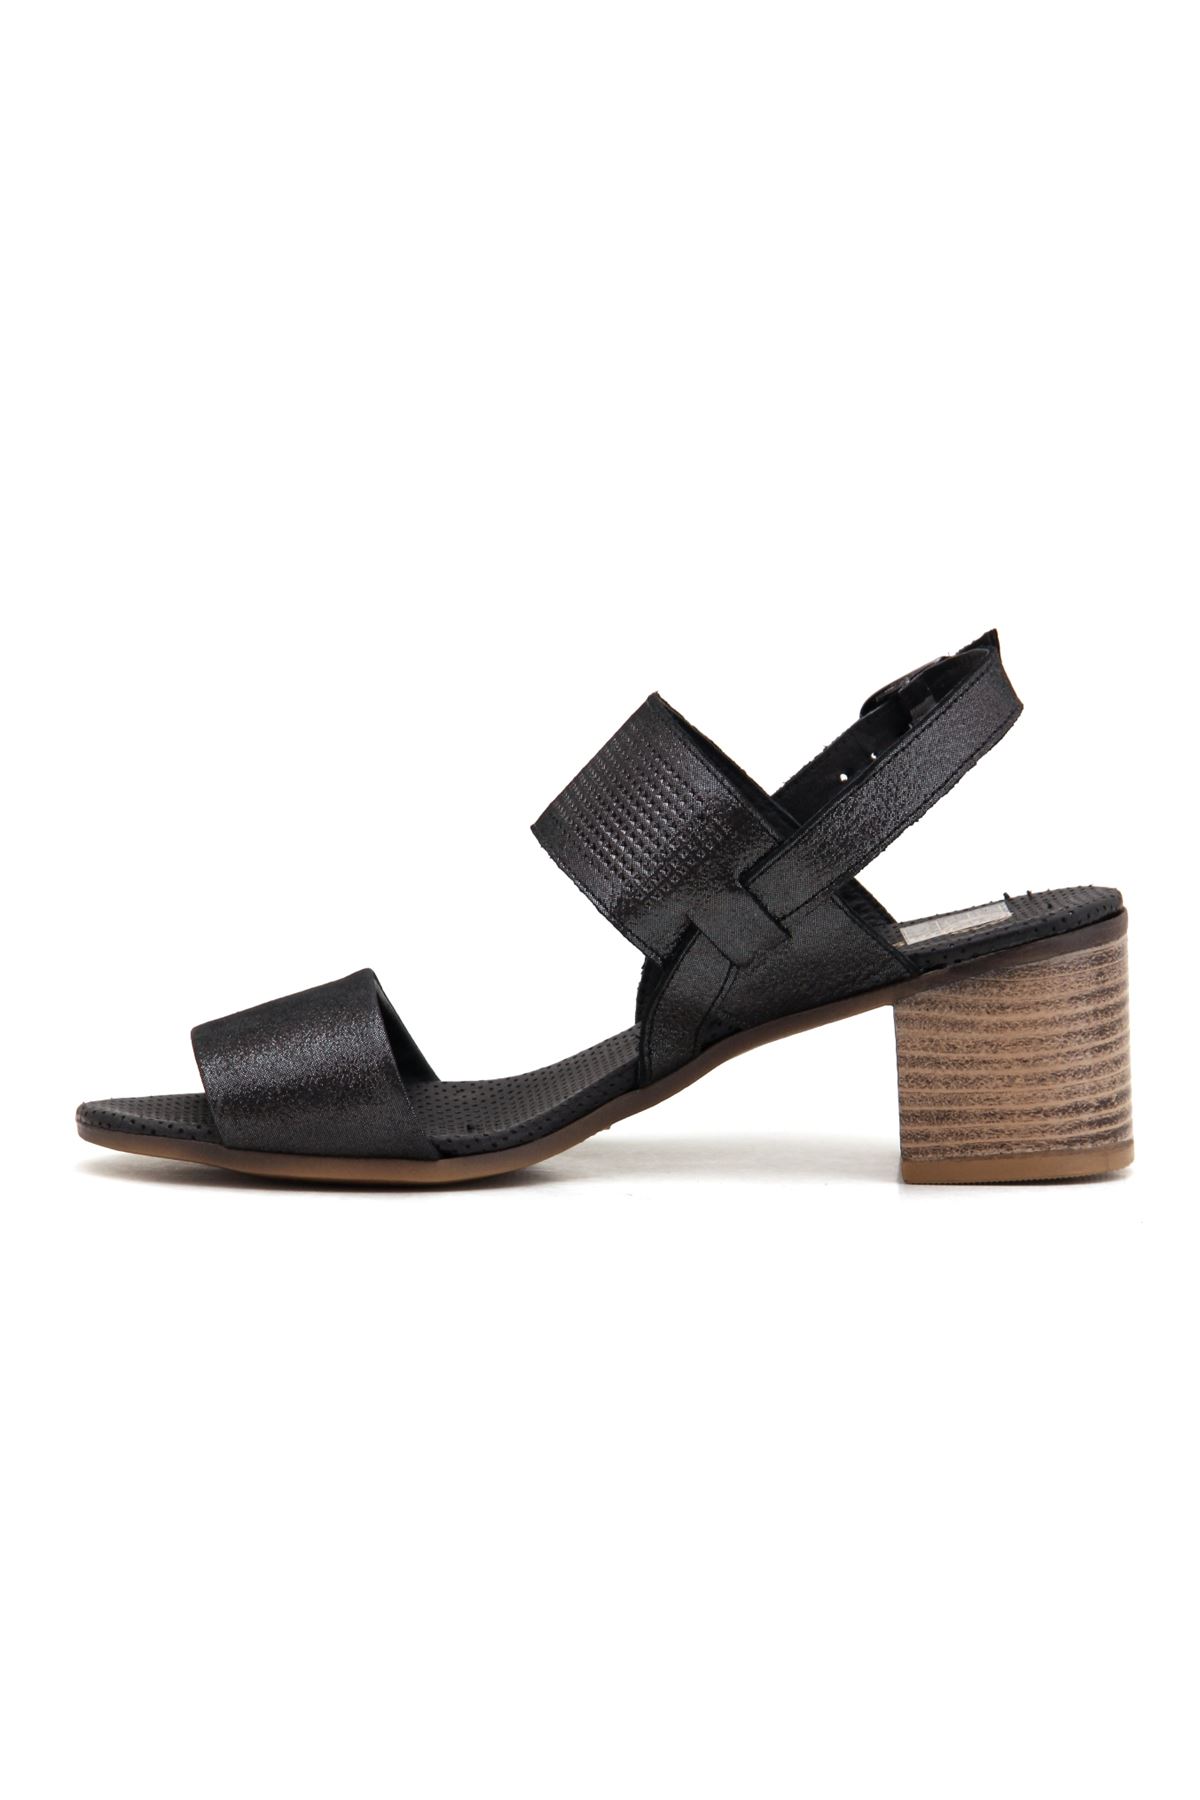 Mammamia D22YS-1335 Hakiki Deri Kadın Sandalet - Siyah Çelik